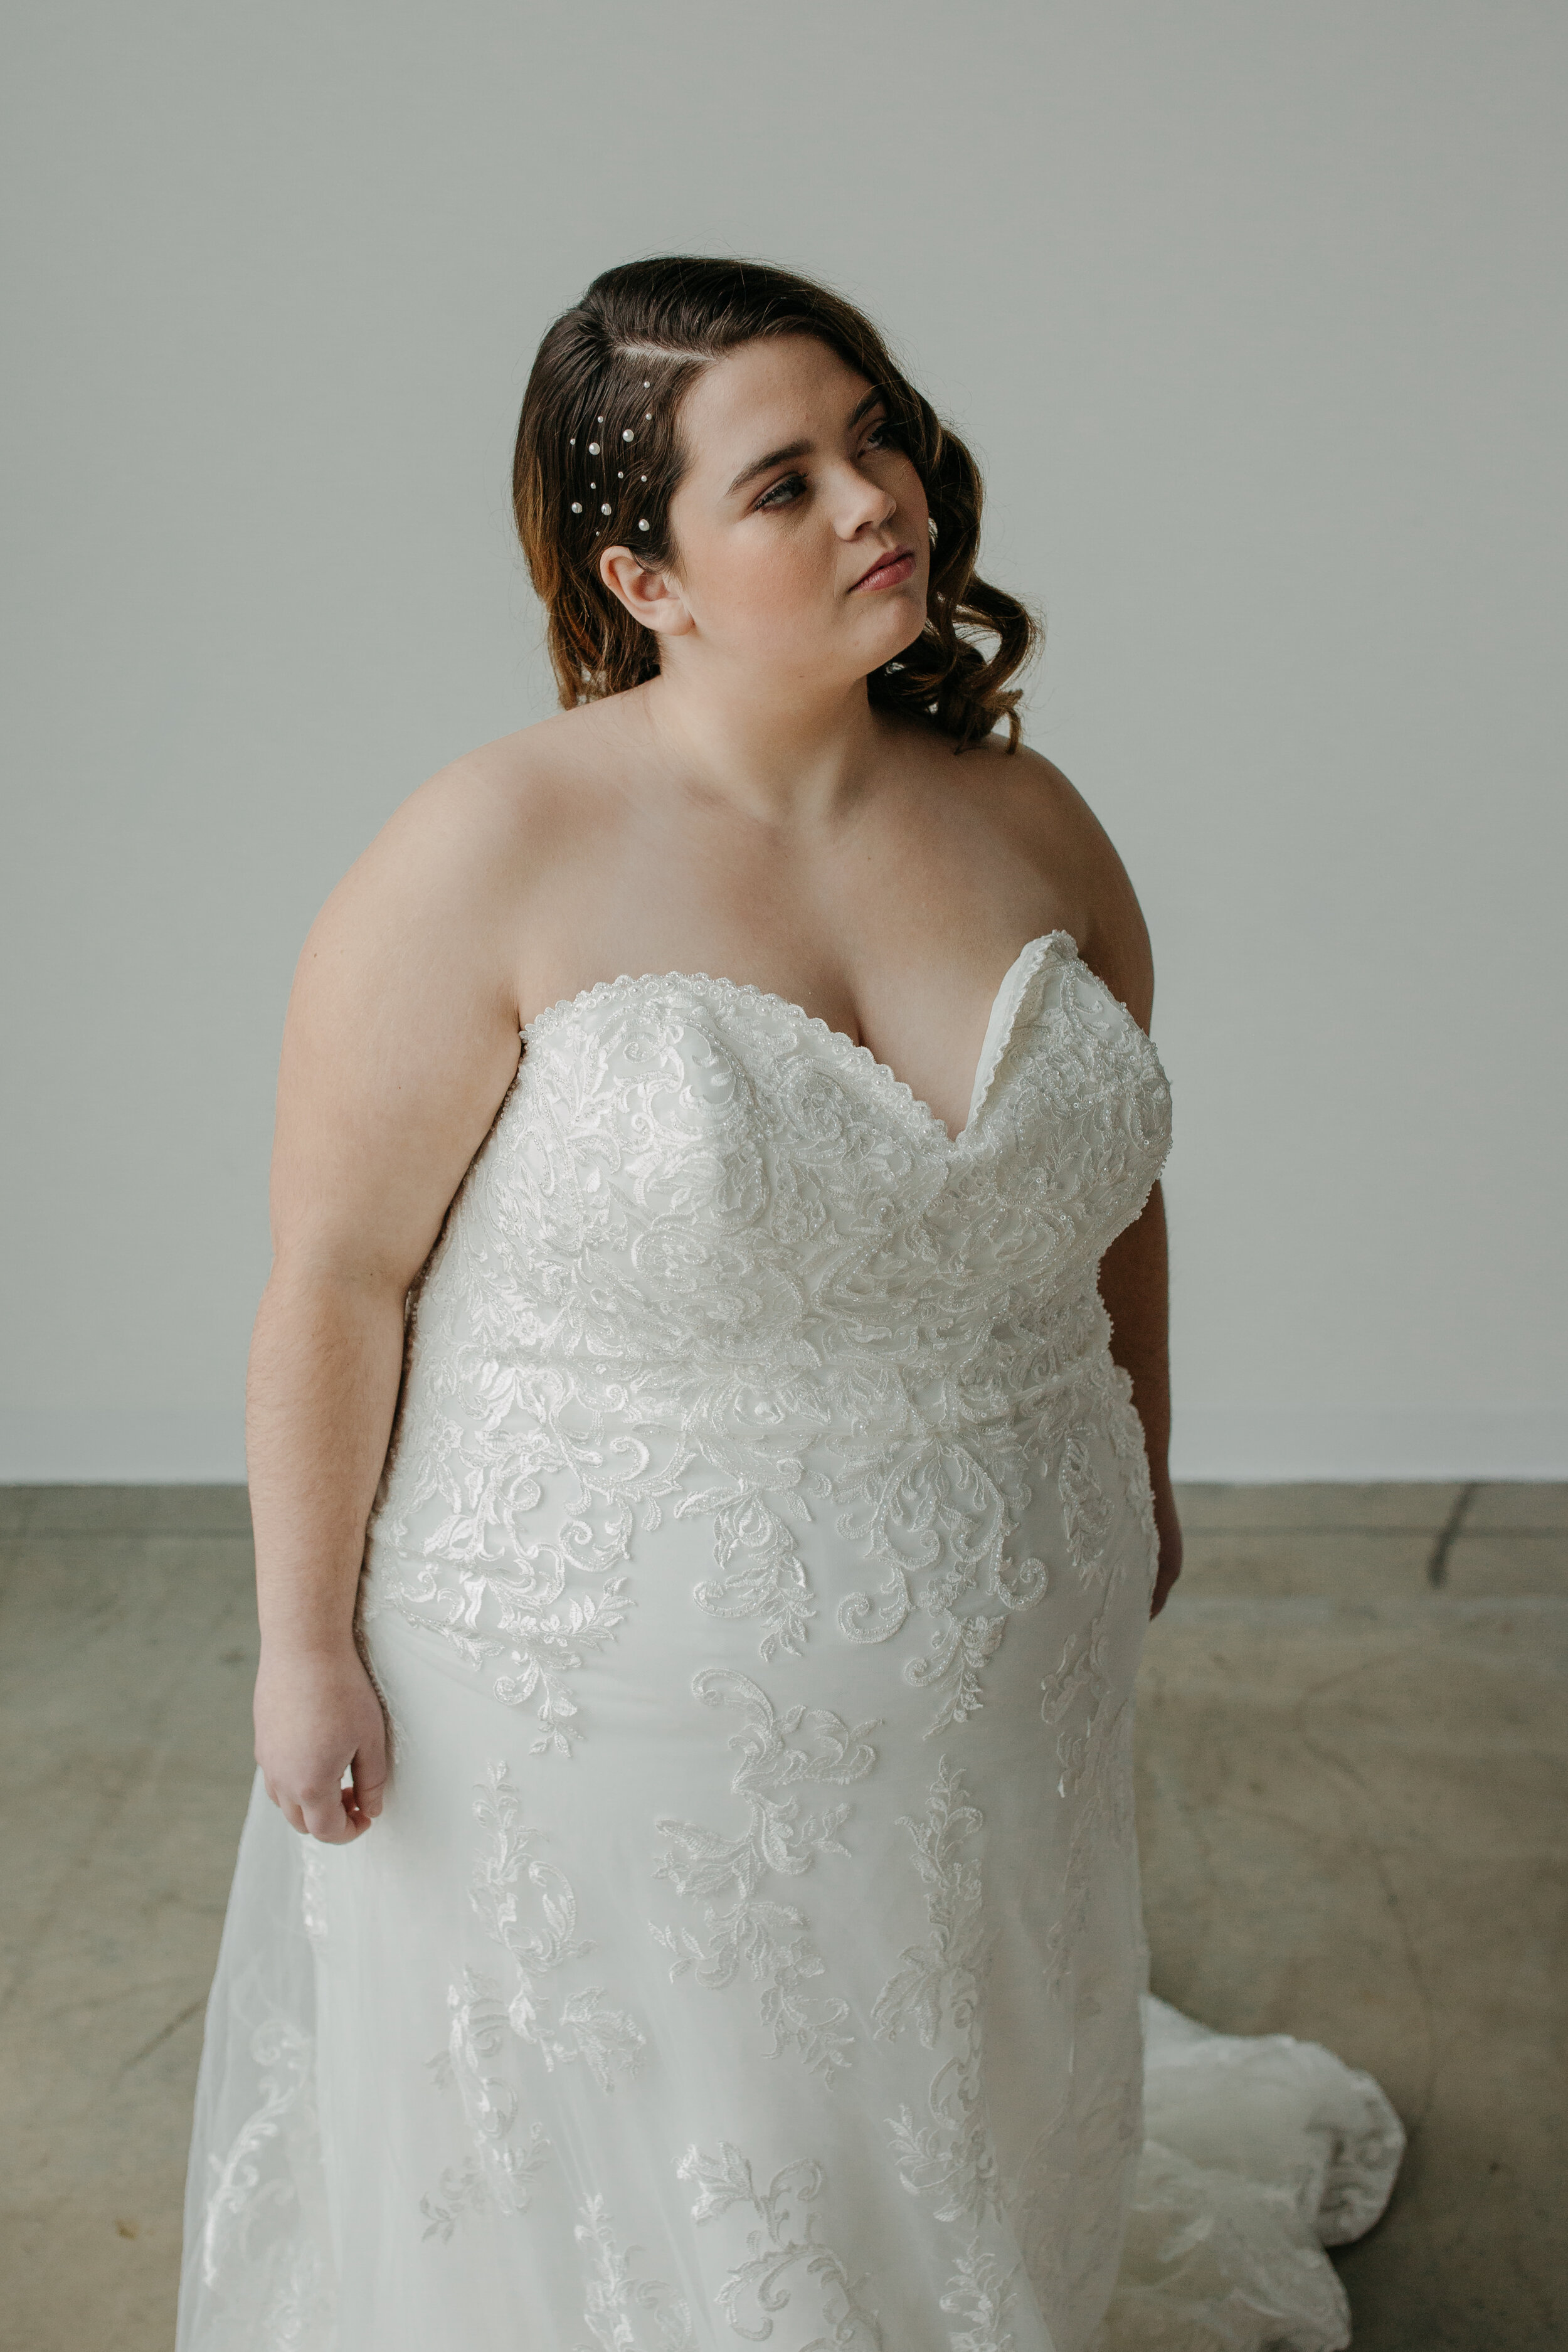 Spokane bride wedding dress I do to you vows to yourself 2021 goals